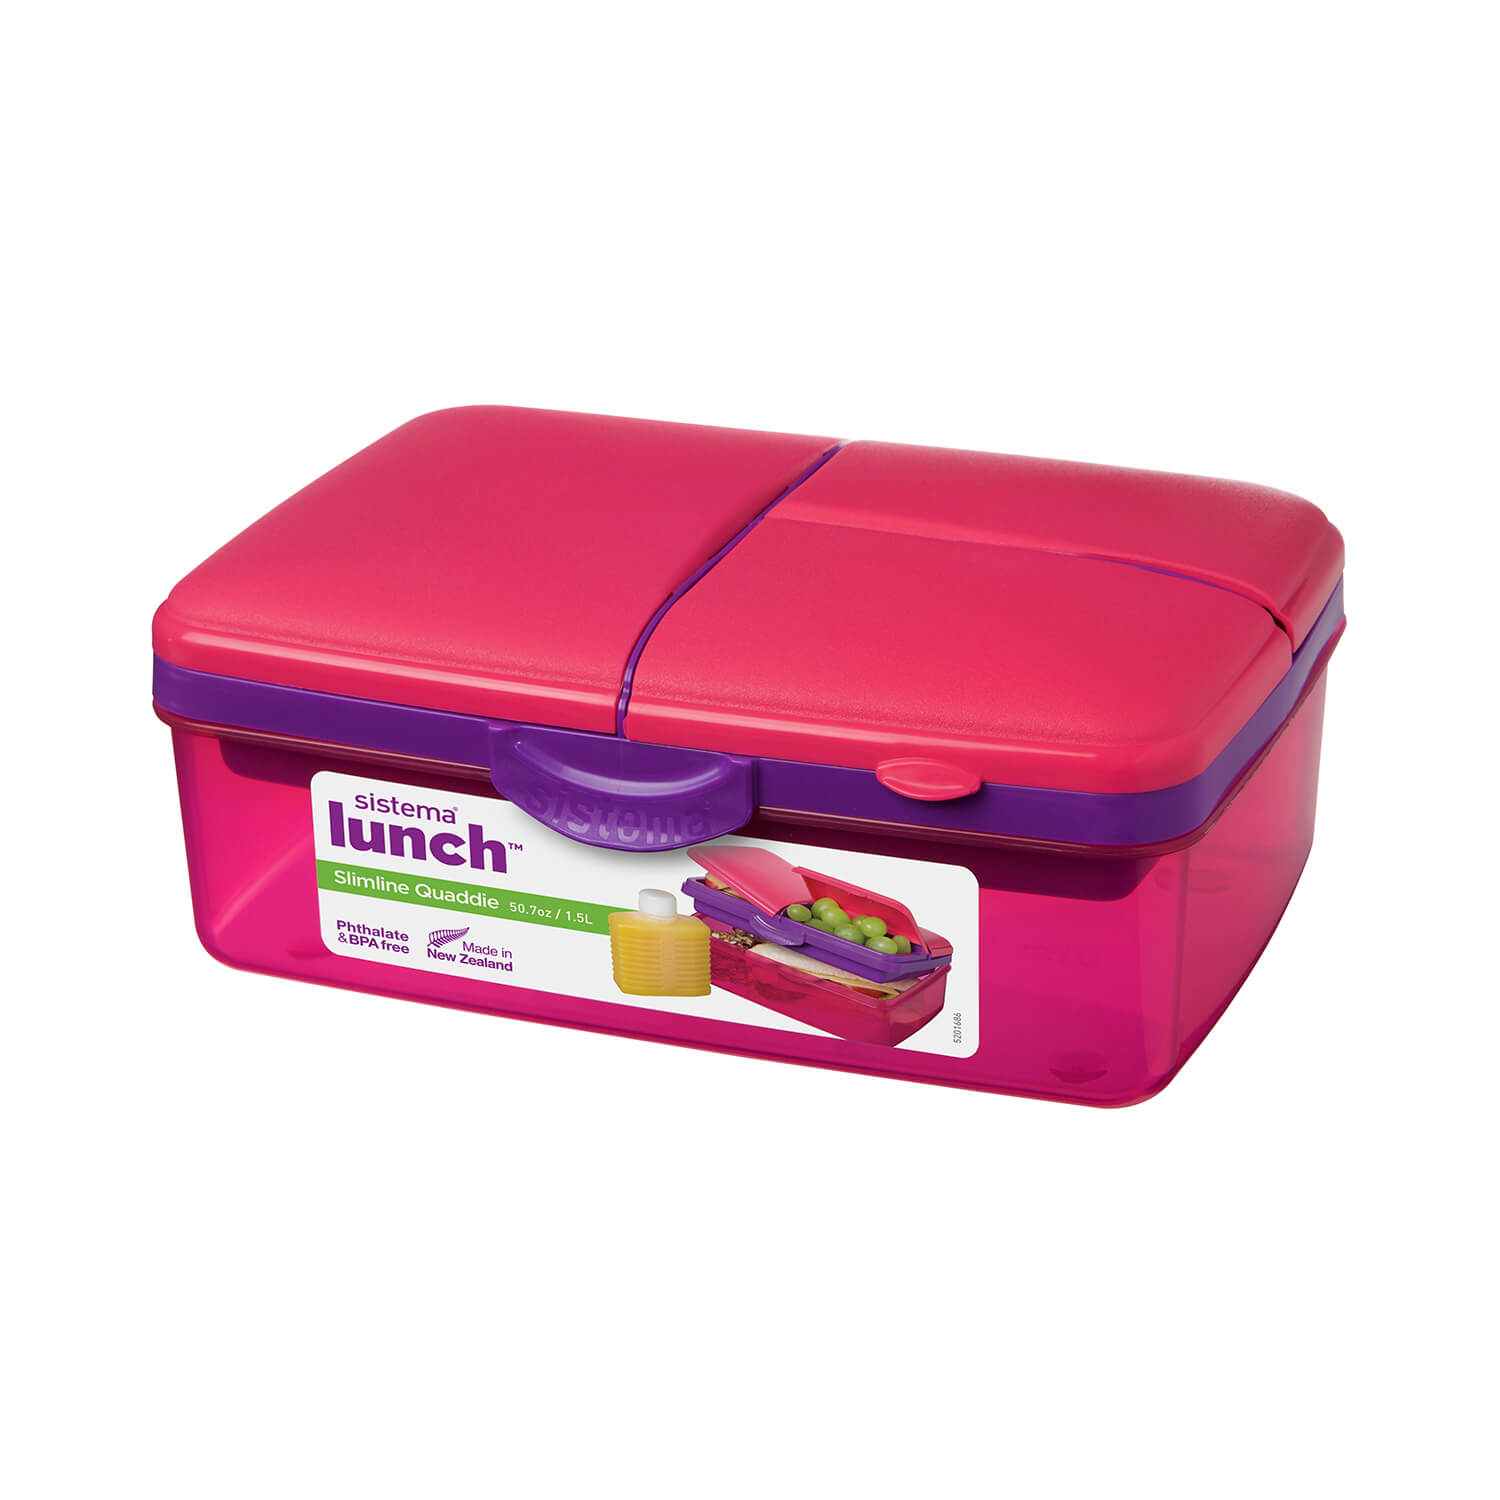 Sistema Lunchbox mit Trinkflasche, Slimline Quaddie, stapelbare Frühstücksdose mit Deckel, BPA-frei, 1,5 L, pink